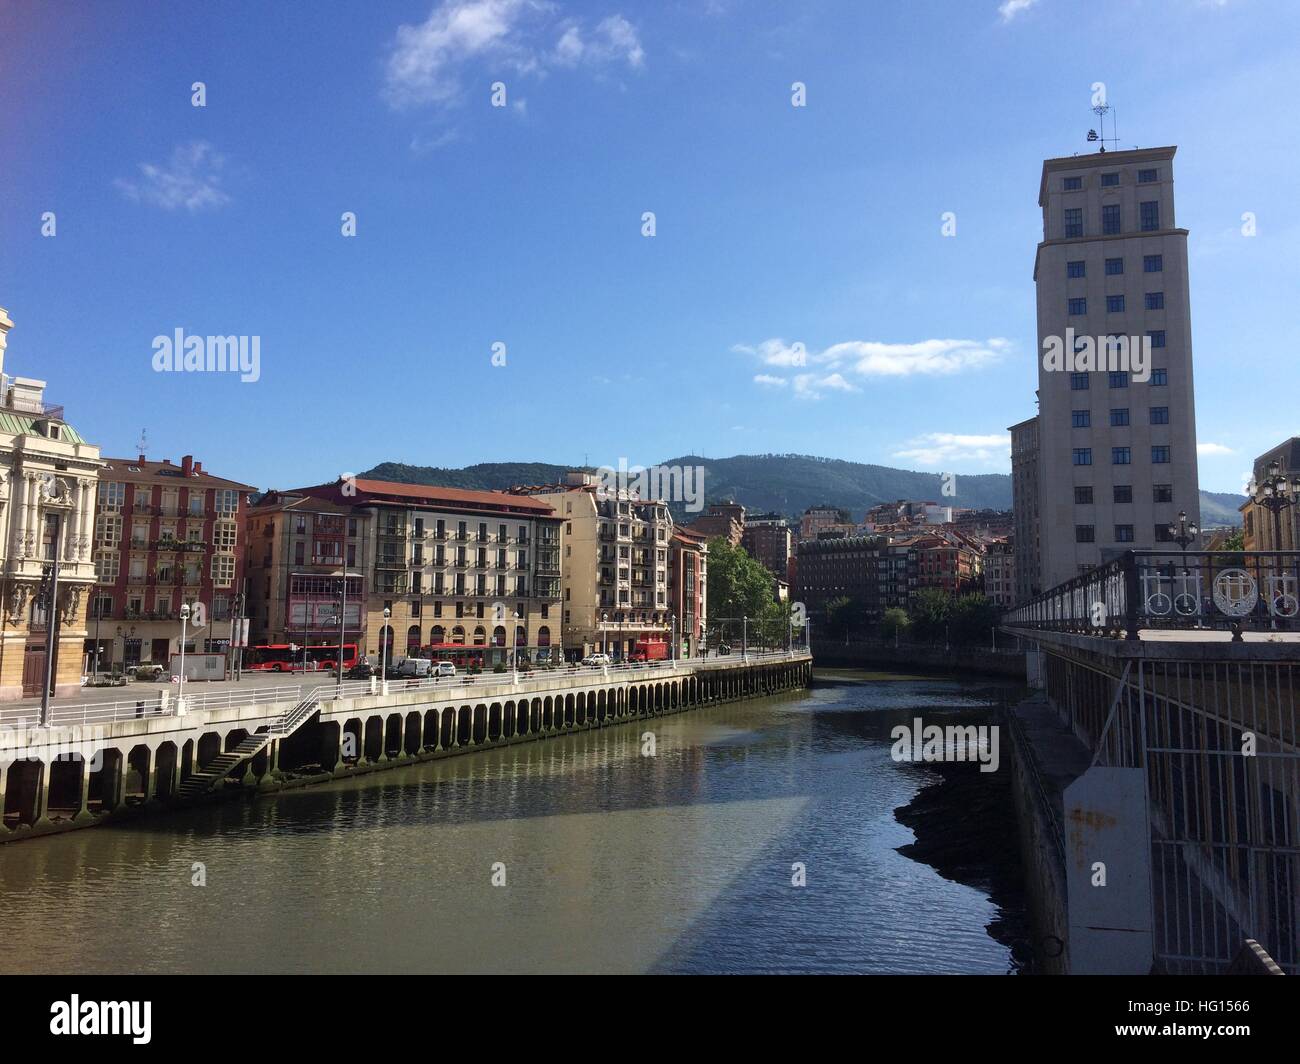 Bilbao, Spanien. 28th July, 2016. Die Altstadt von Bilbao (Spanien), aufgenommen am 28.07.2016. Aus der dahinsiechenden Industriestadt ist dank des Guggenheim-Museums ein Touristenmagnet geworden. Mehr als 19 Millionen Kunstfreunde aus aller Welt haben seit Oktober 1997 das Guggenheim-Museum besucht. (zu dpa «Wiedergeburt dank der Kunst: Guggenheim Bilbao feiert Jubiläum») Foto: Carola Frentzen/dpa /dpa/Alamy Live News Stock Photo